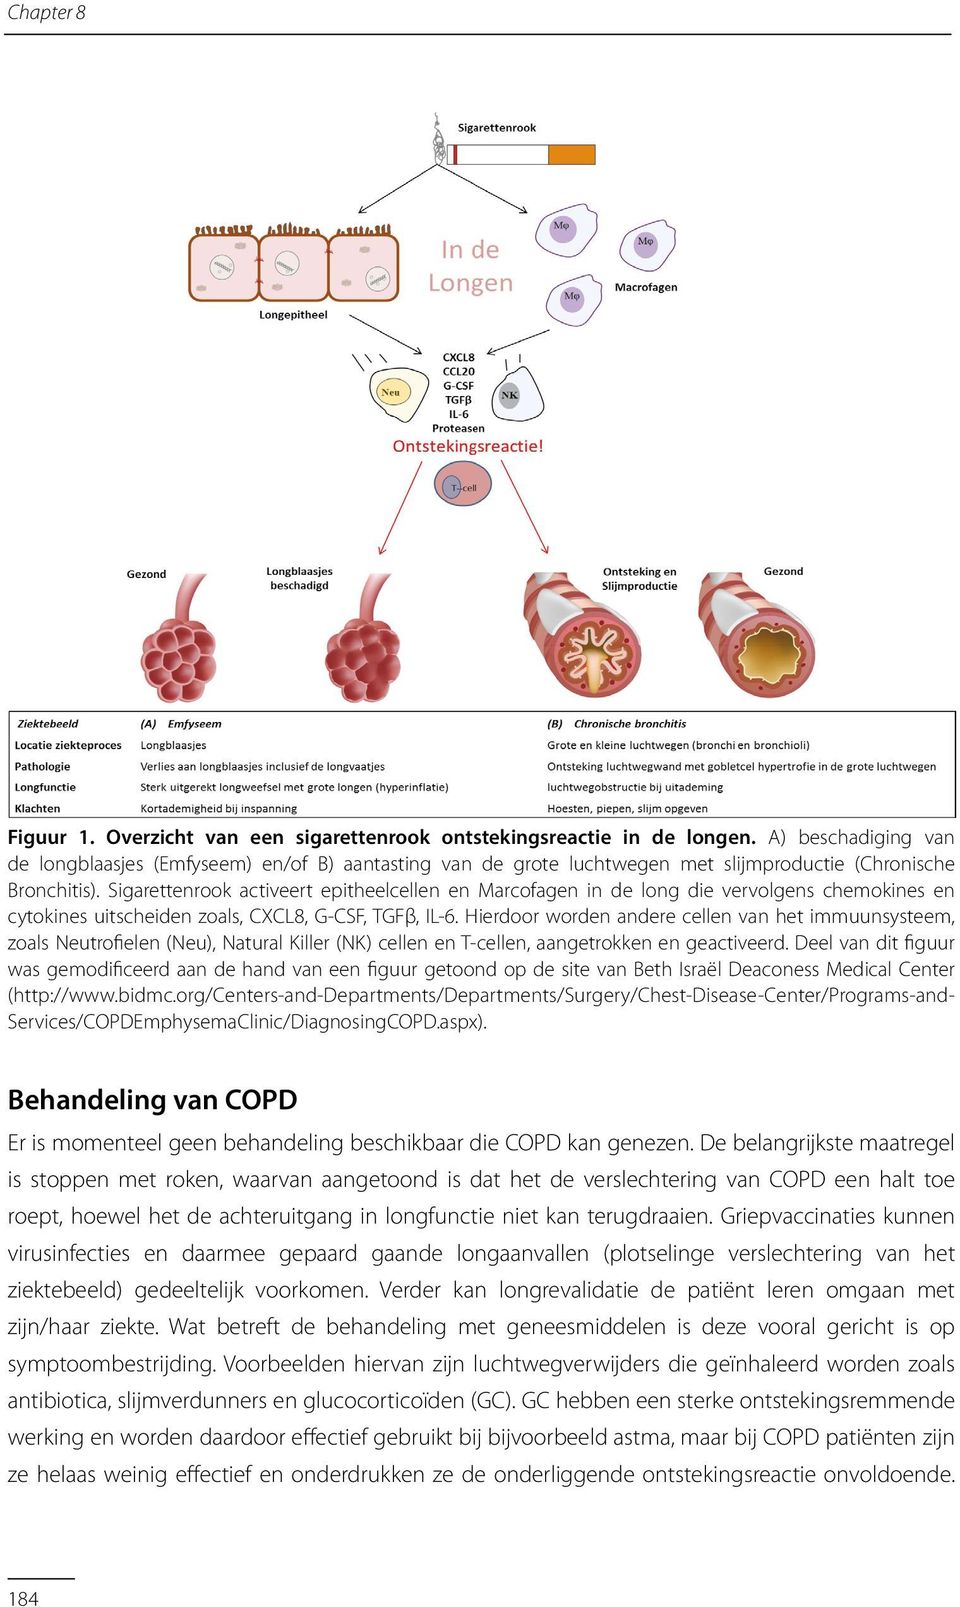 Sigarettenrook activeert epitheelcellen en Marcofagen in de long die vervolgens chemokines en cytokines uitscheiden zoals, CXCL8, G-CSF, TGFβ, IL-6.